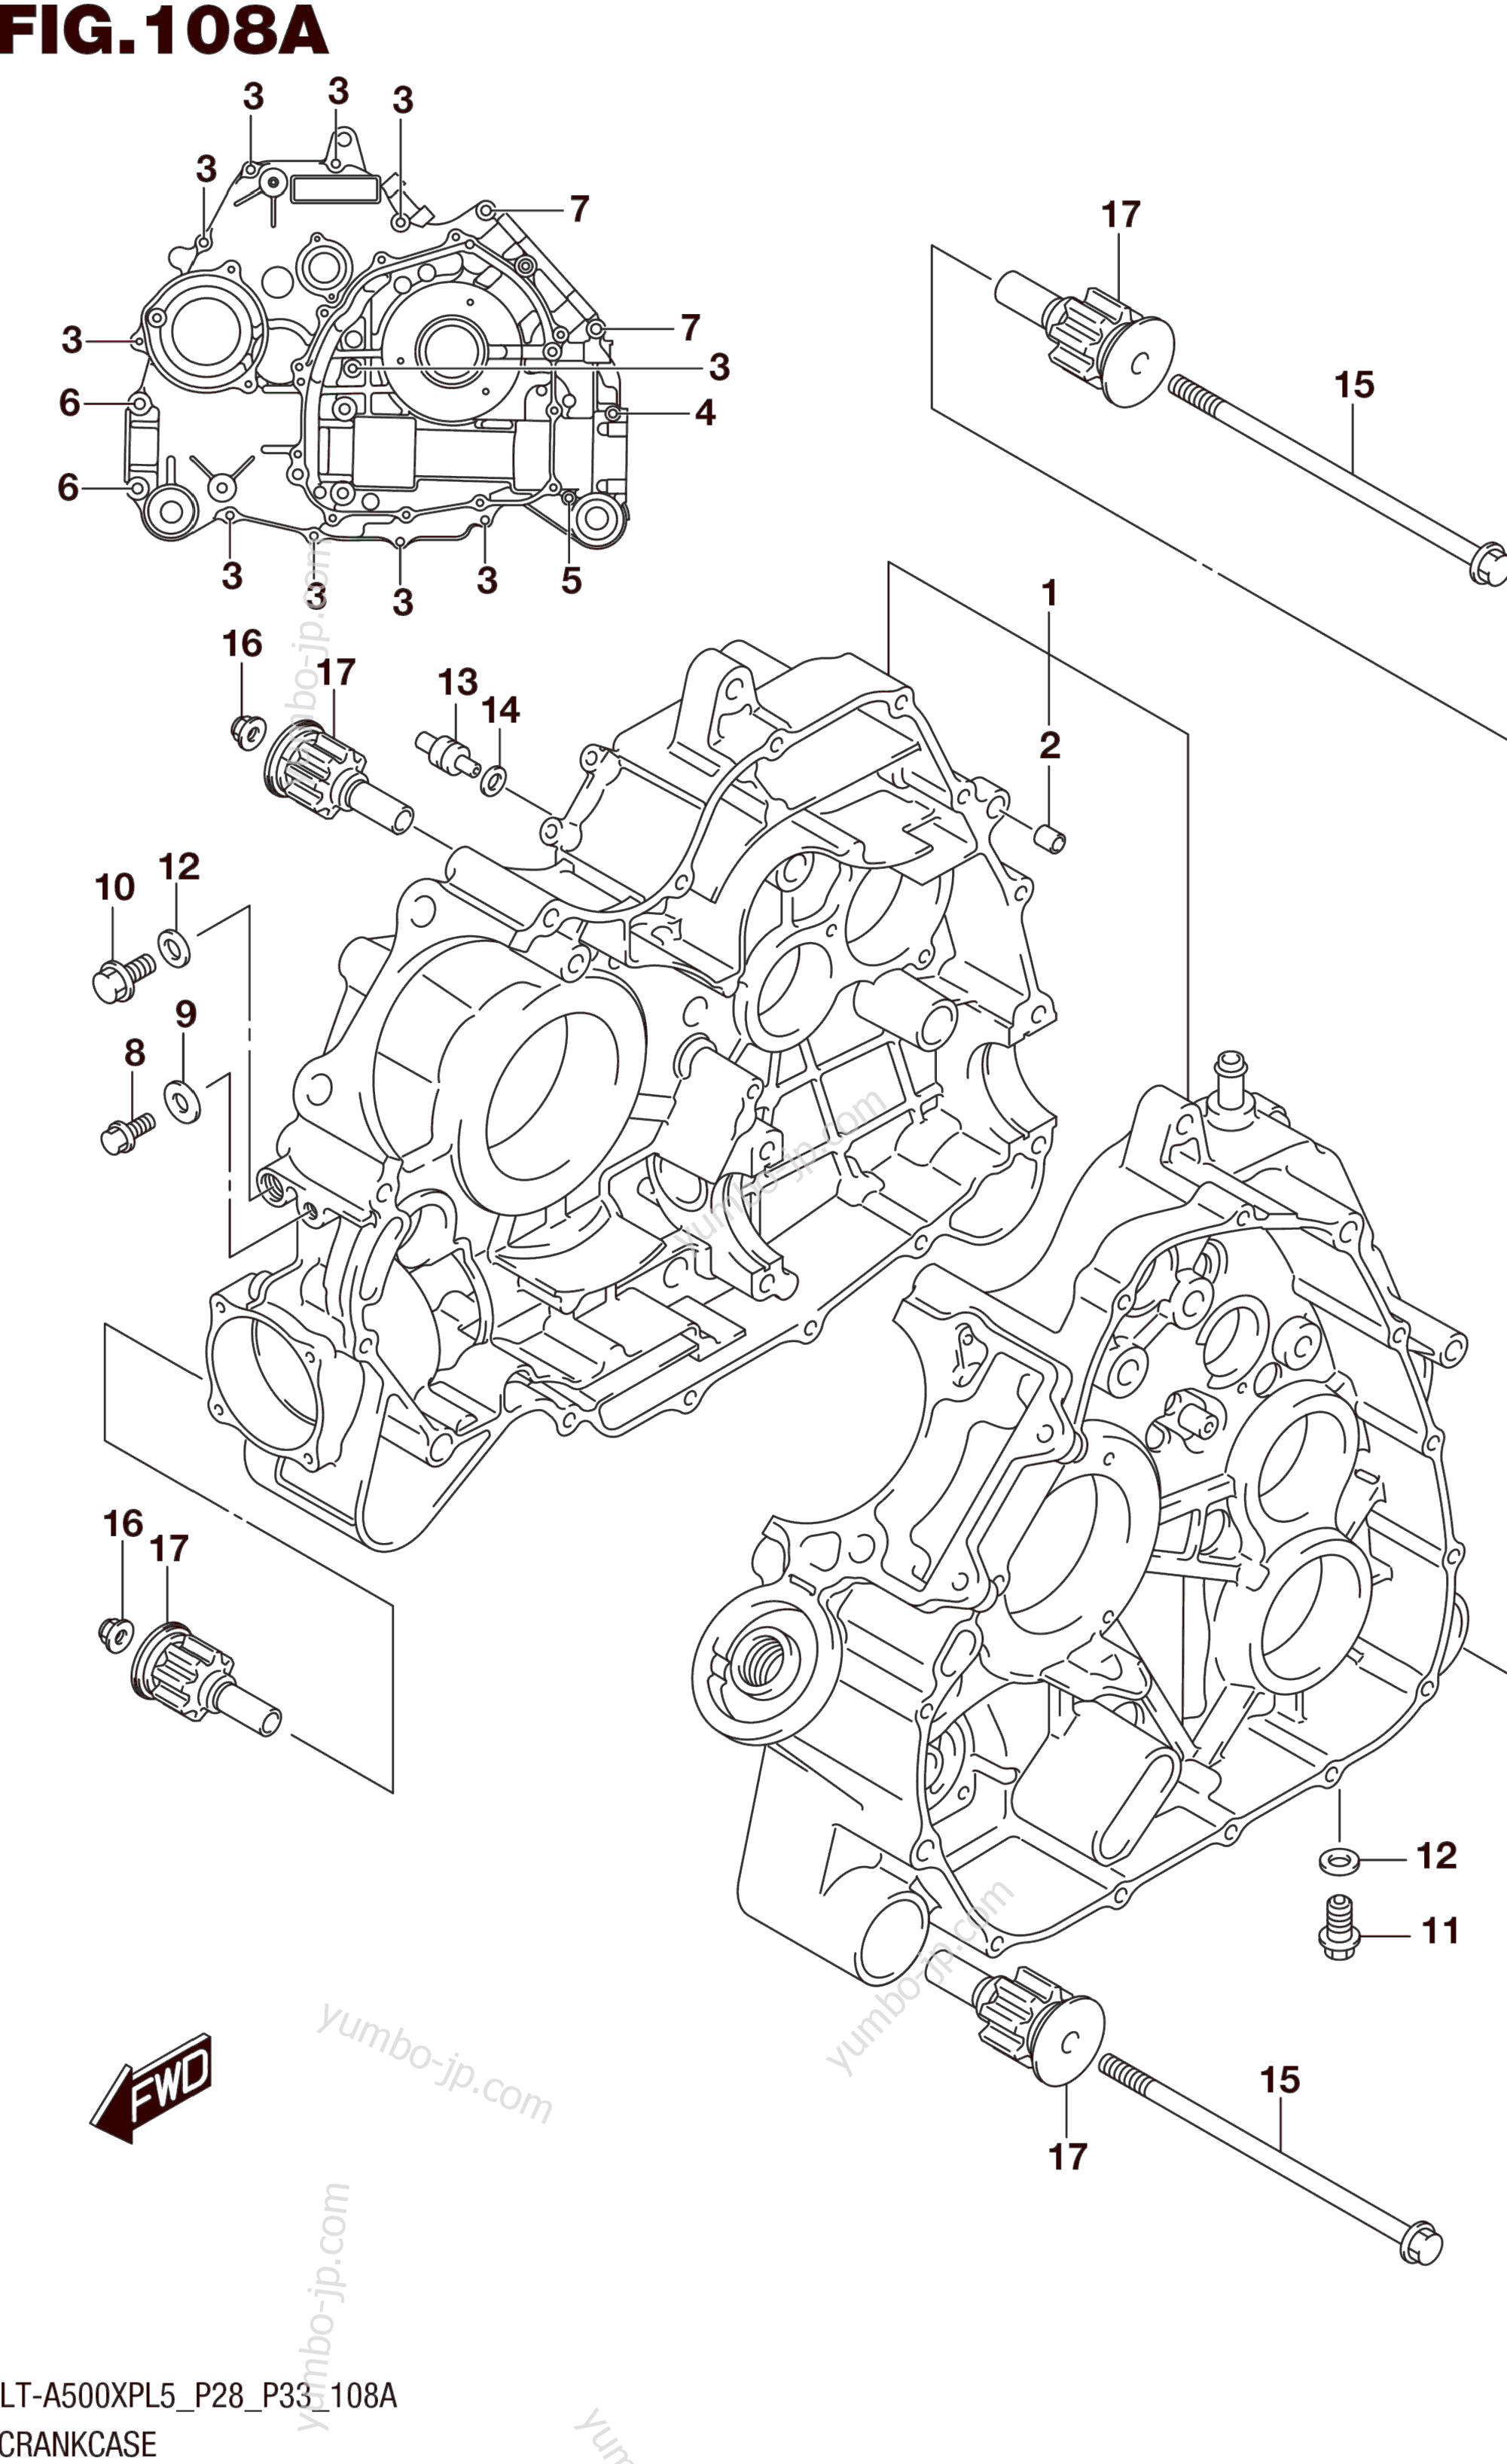 CRANKCASE for ATVs SUZUKI LT-A500XP 2015 year